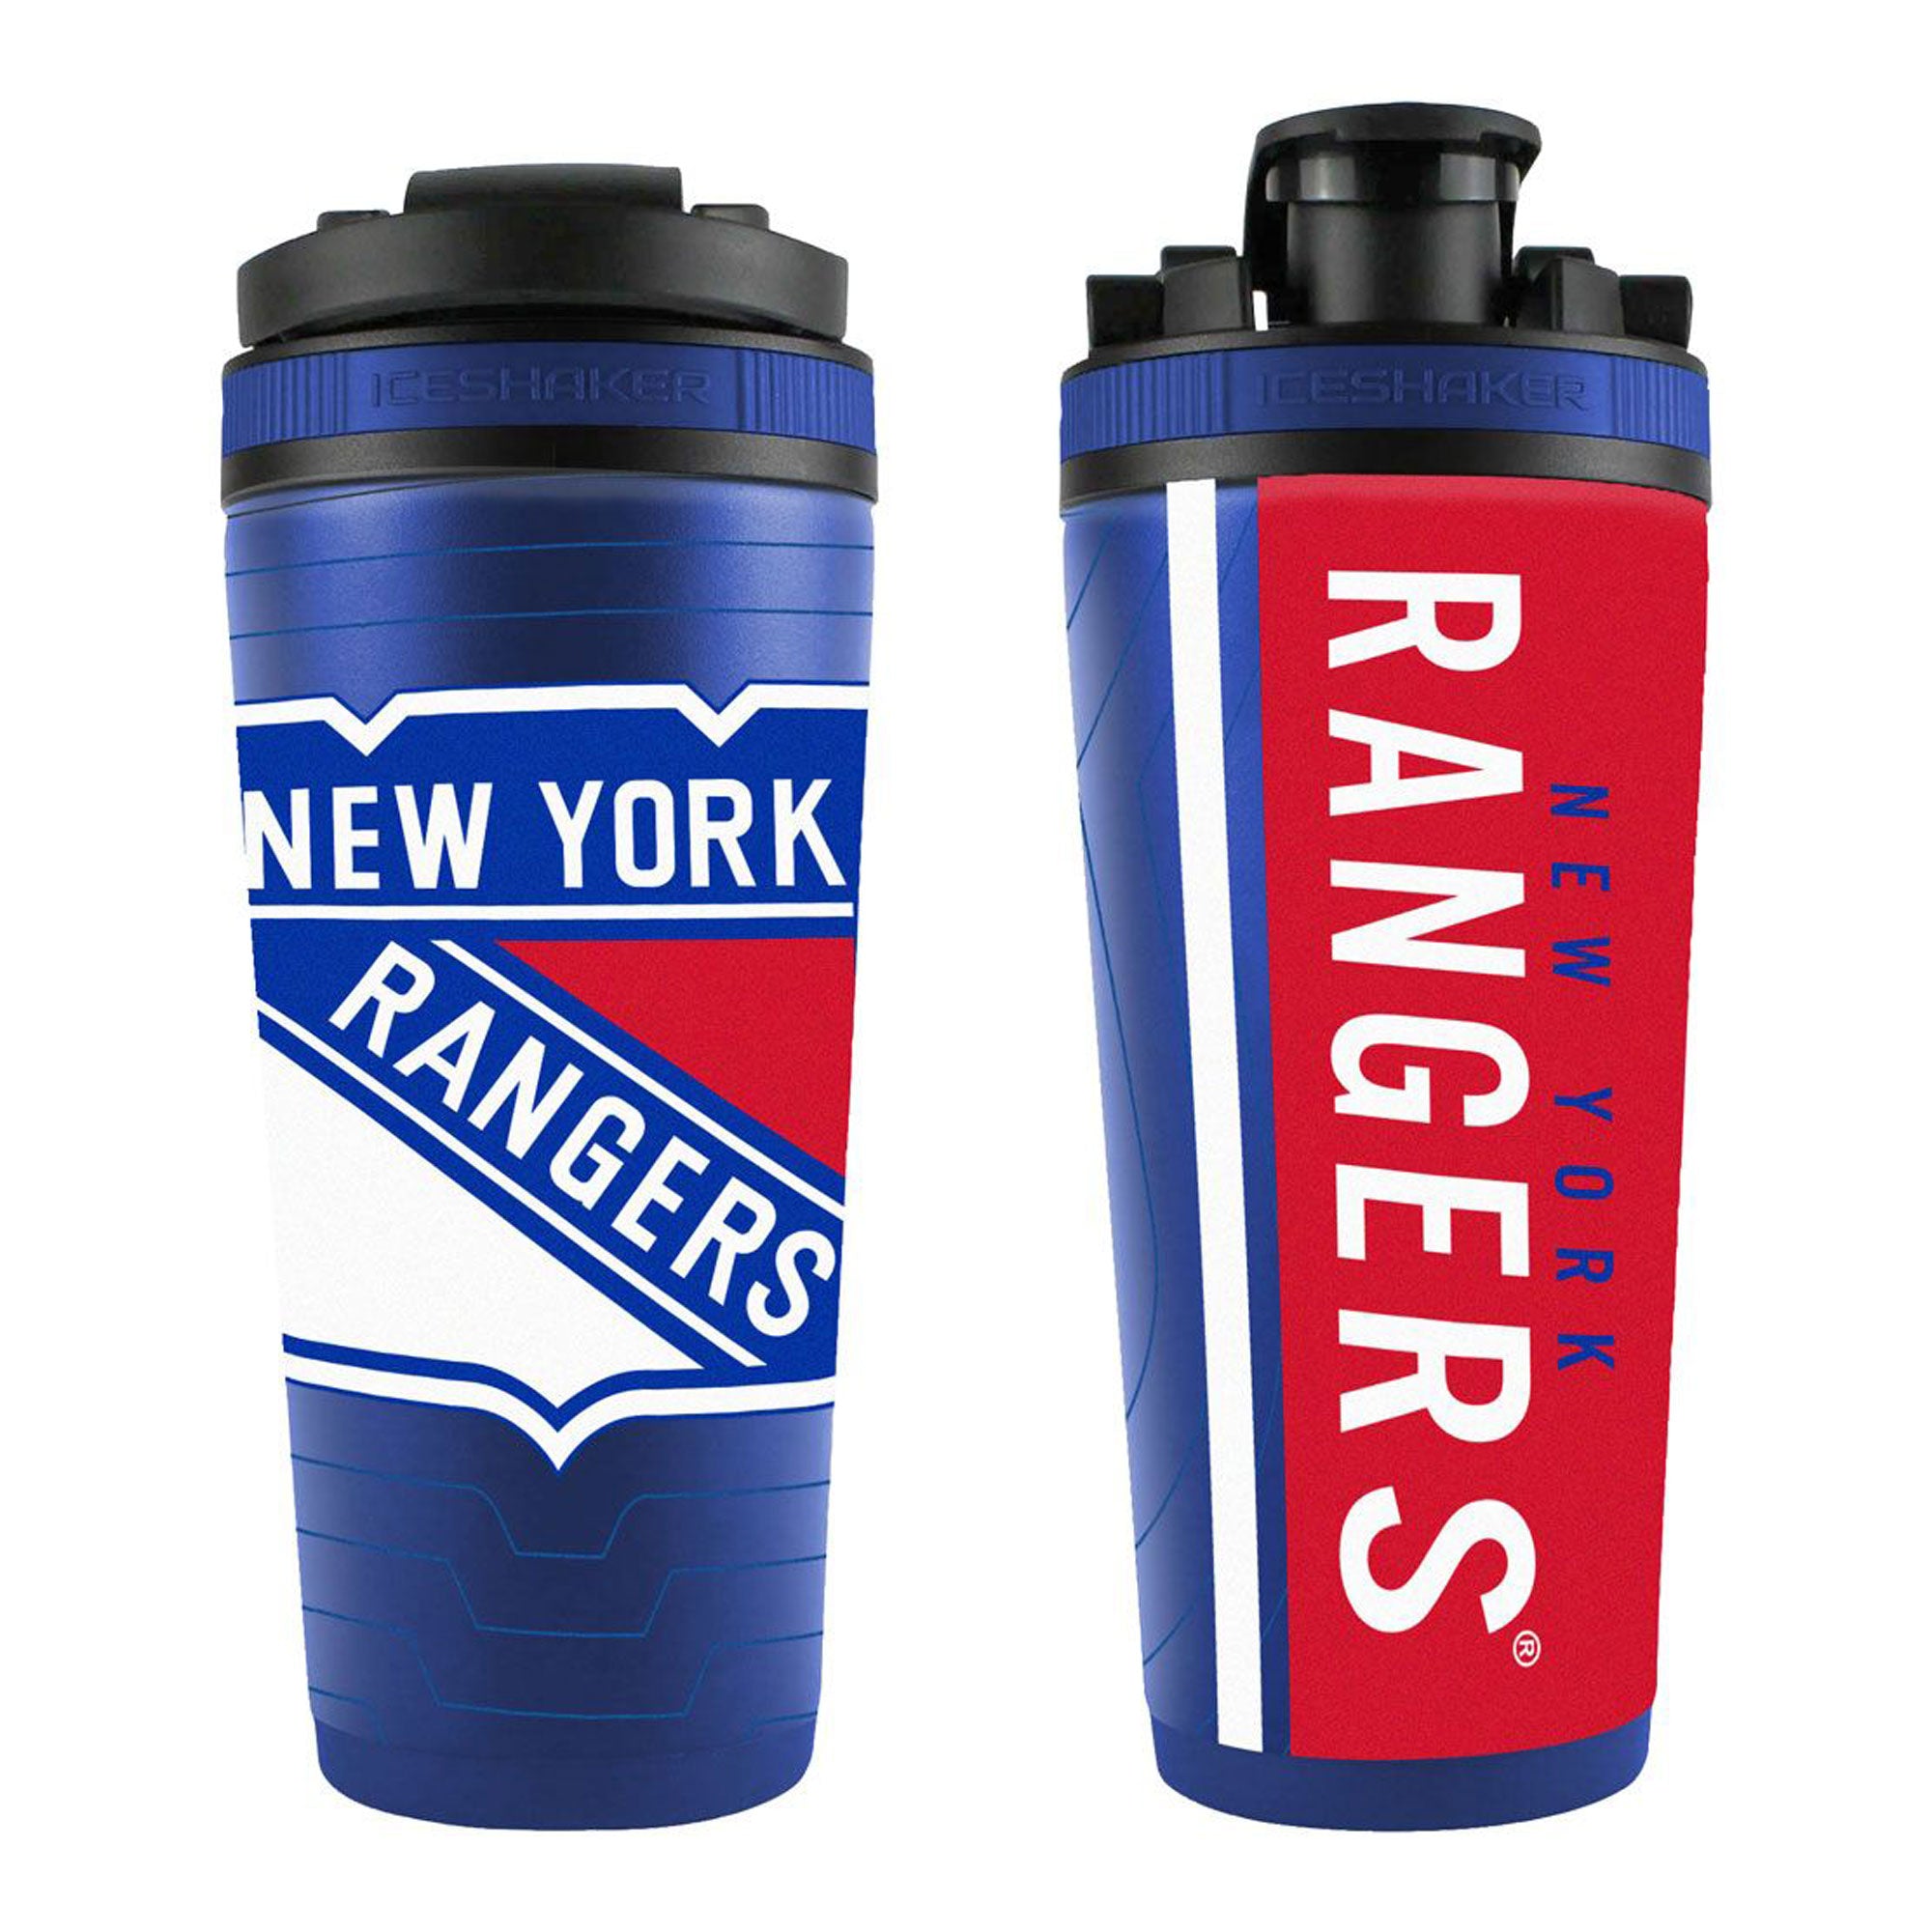 Officially Licensed New York Rangers 26oz Ice Shaker